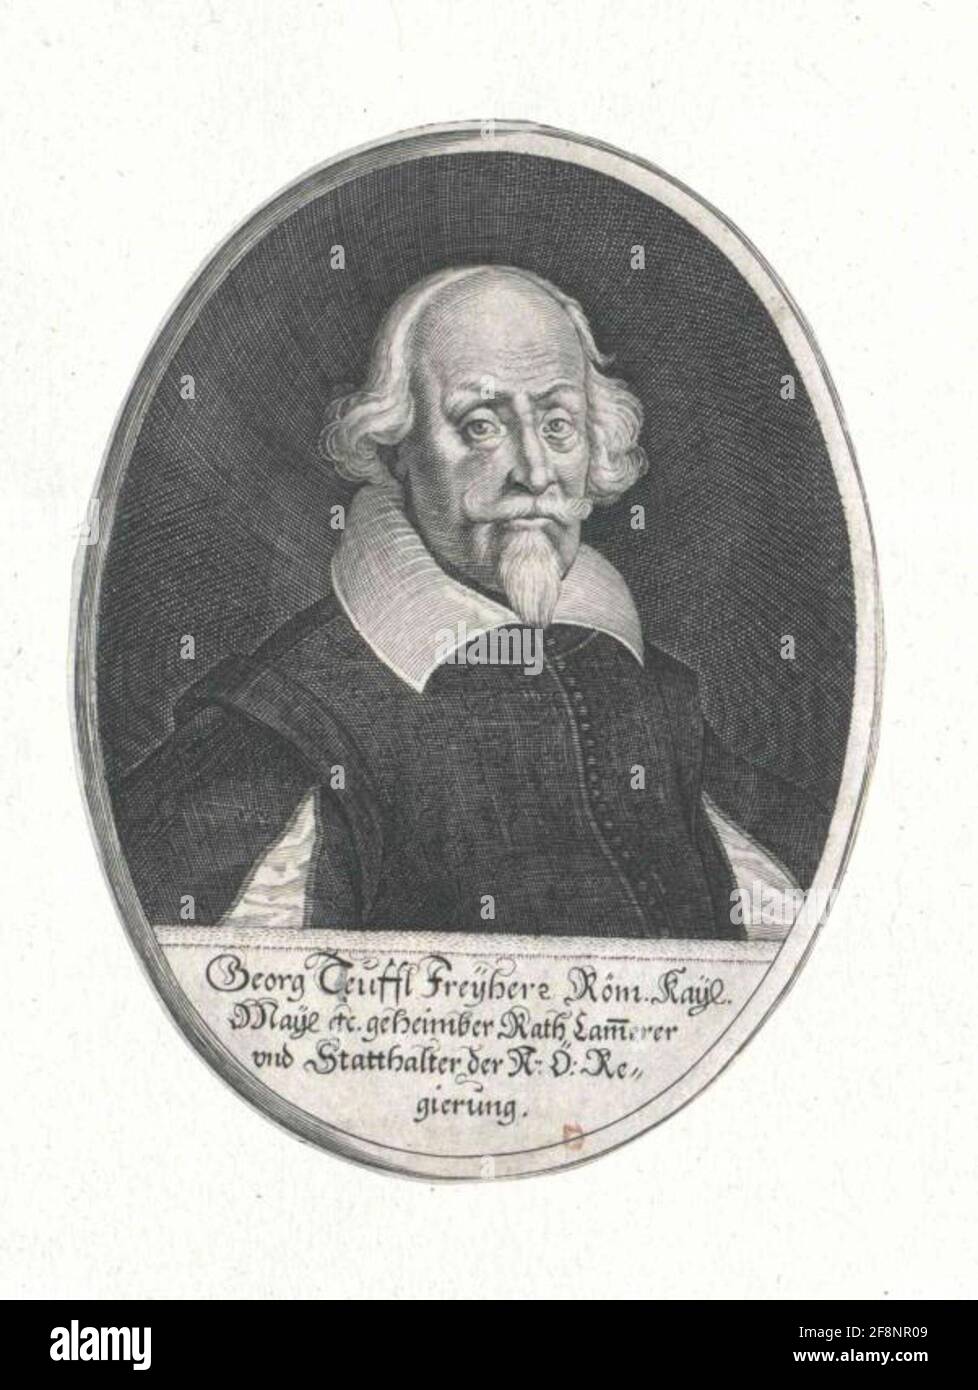 Teufel, Freiherr von Guntersdorf, George. Stock Photo